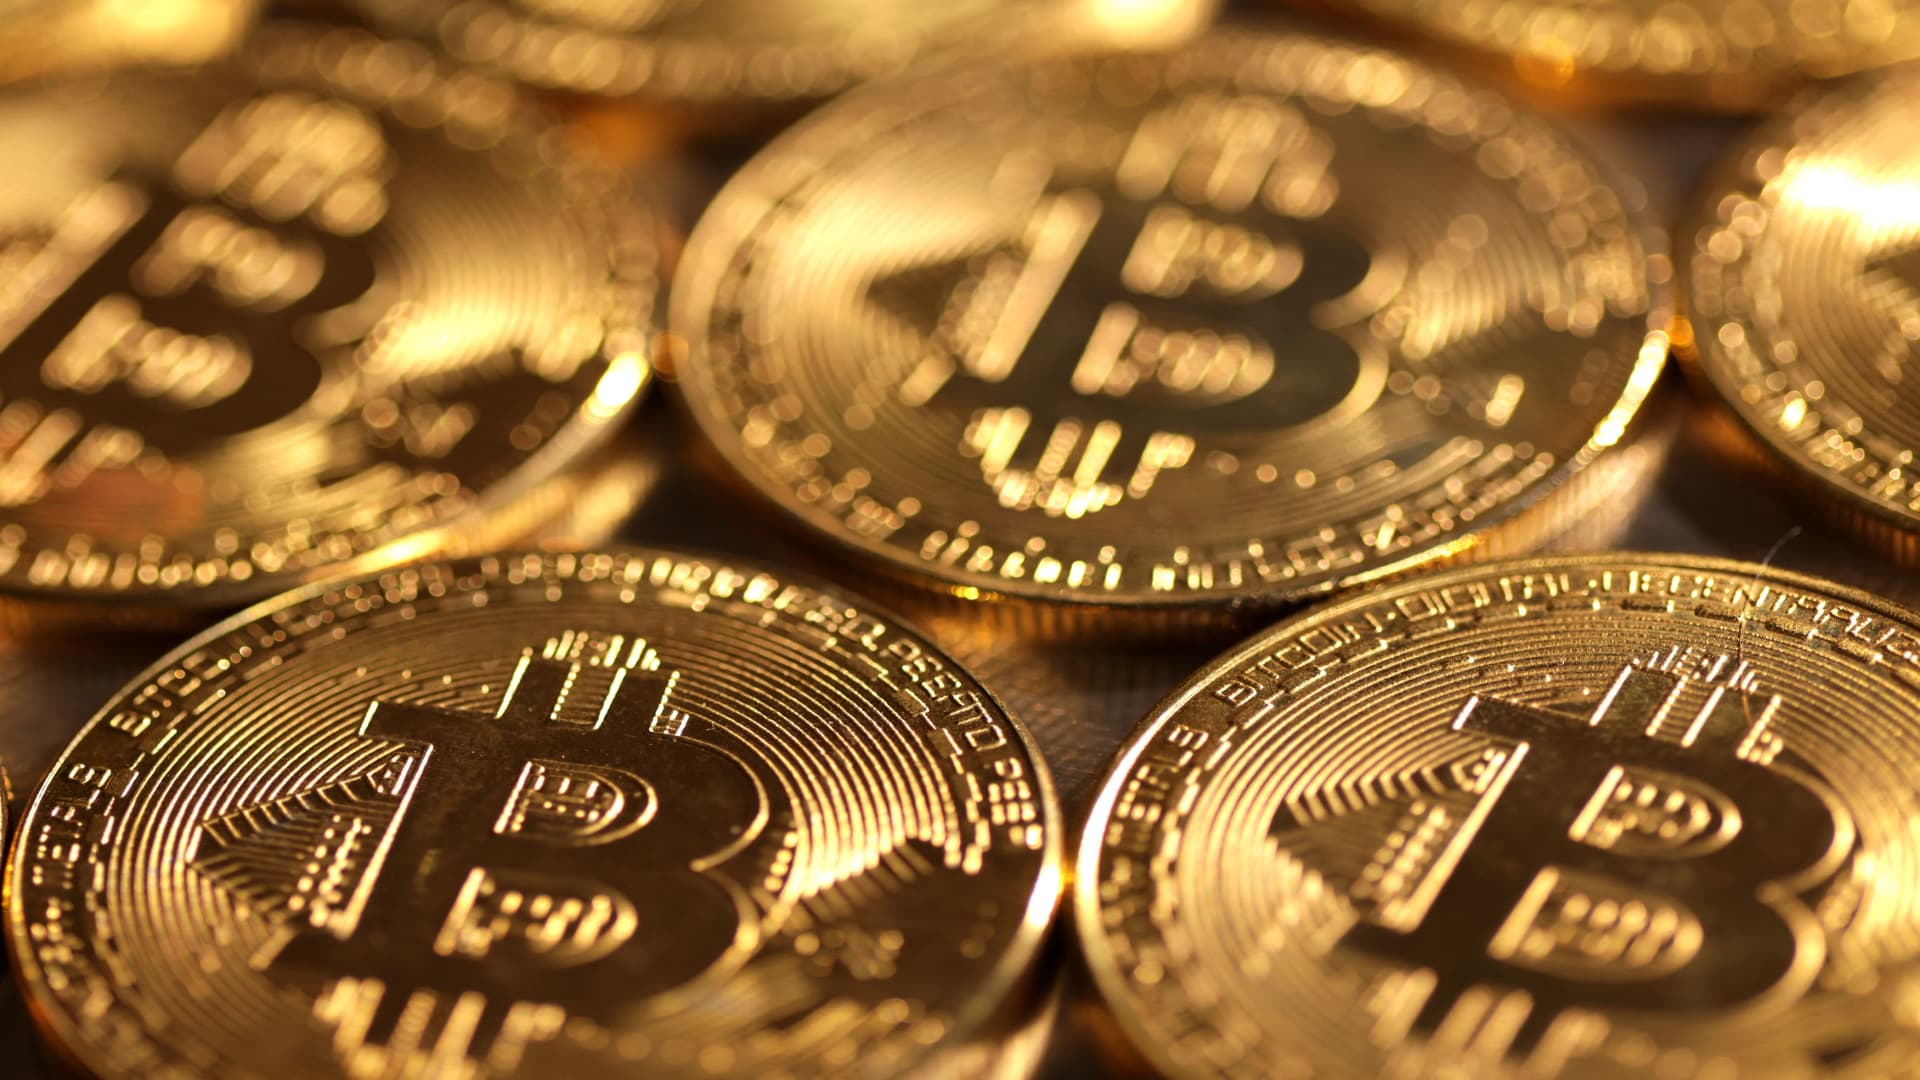 Tranzacționarea Bitcoin | Care este? Aflați cum să tranzacționați Bitcoin